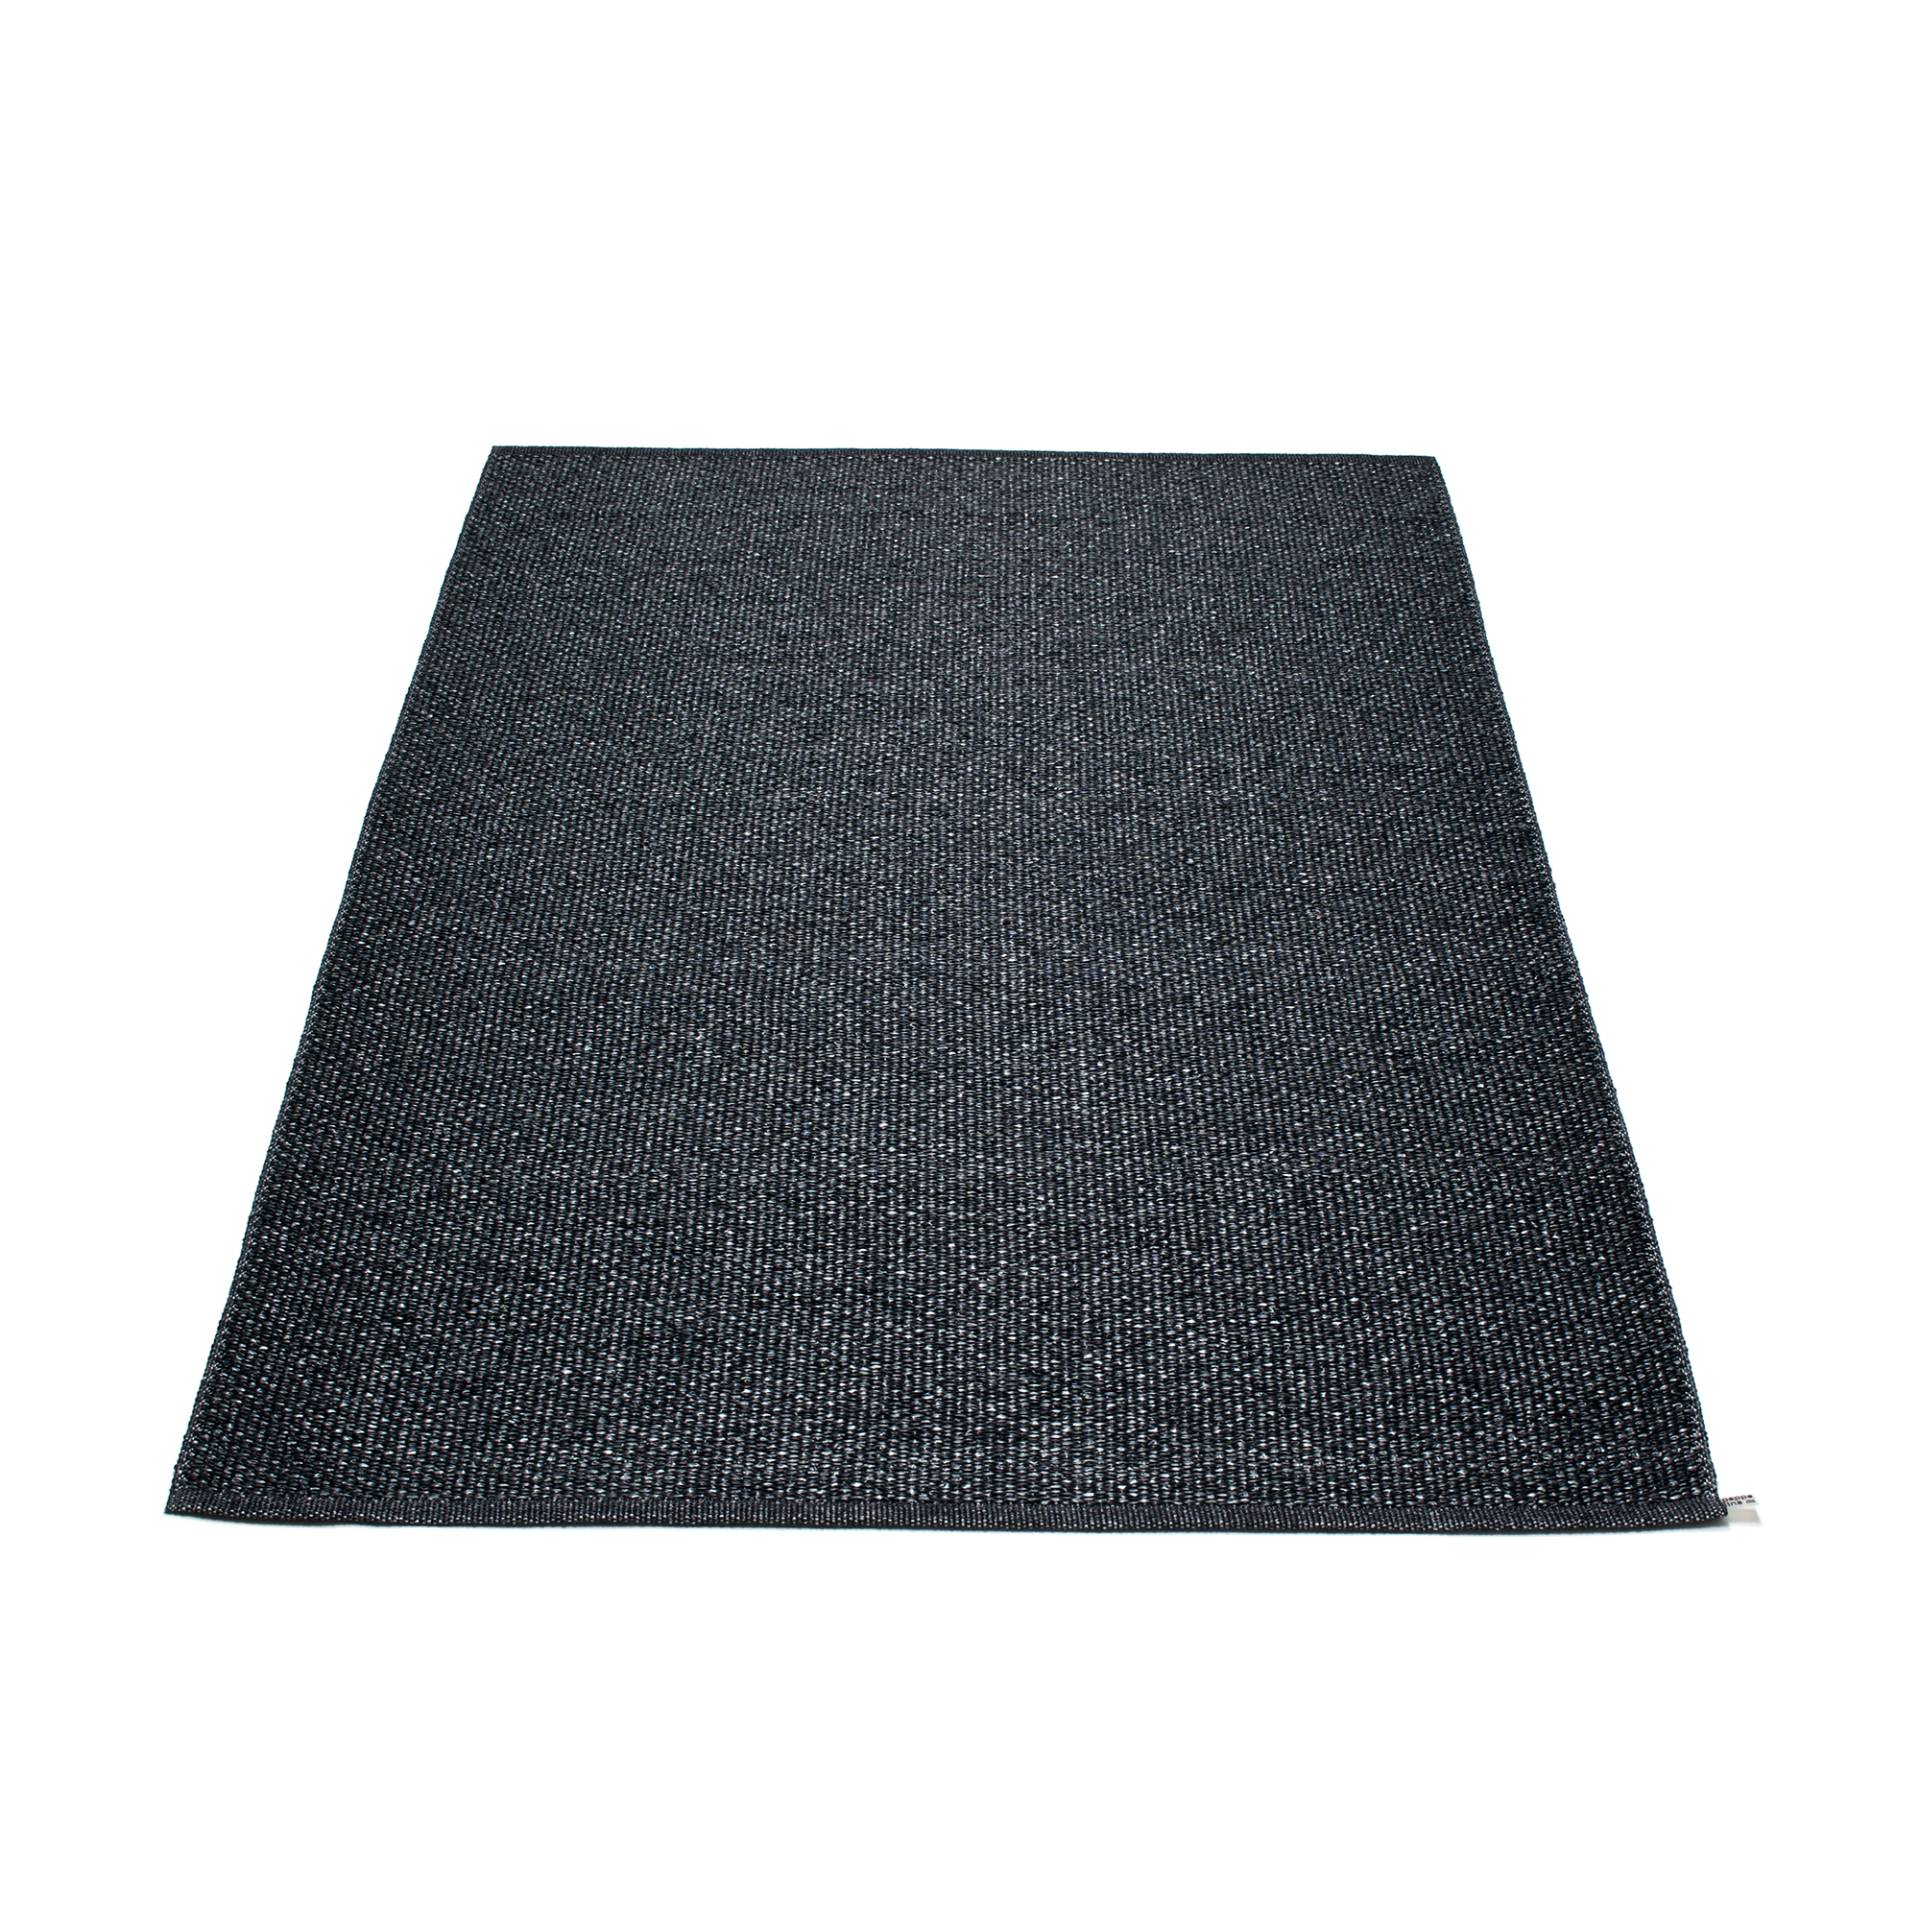 pappelina - Svea Teppich 180x260cm - schwarz metallic/schwarz/Schweißkante/LxB 260x180cm/für Innen- und Außenbereich geeignet von pappelina